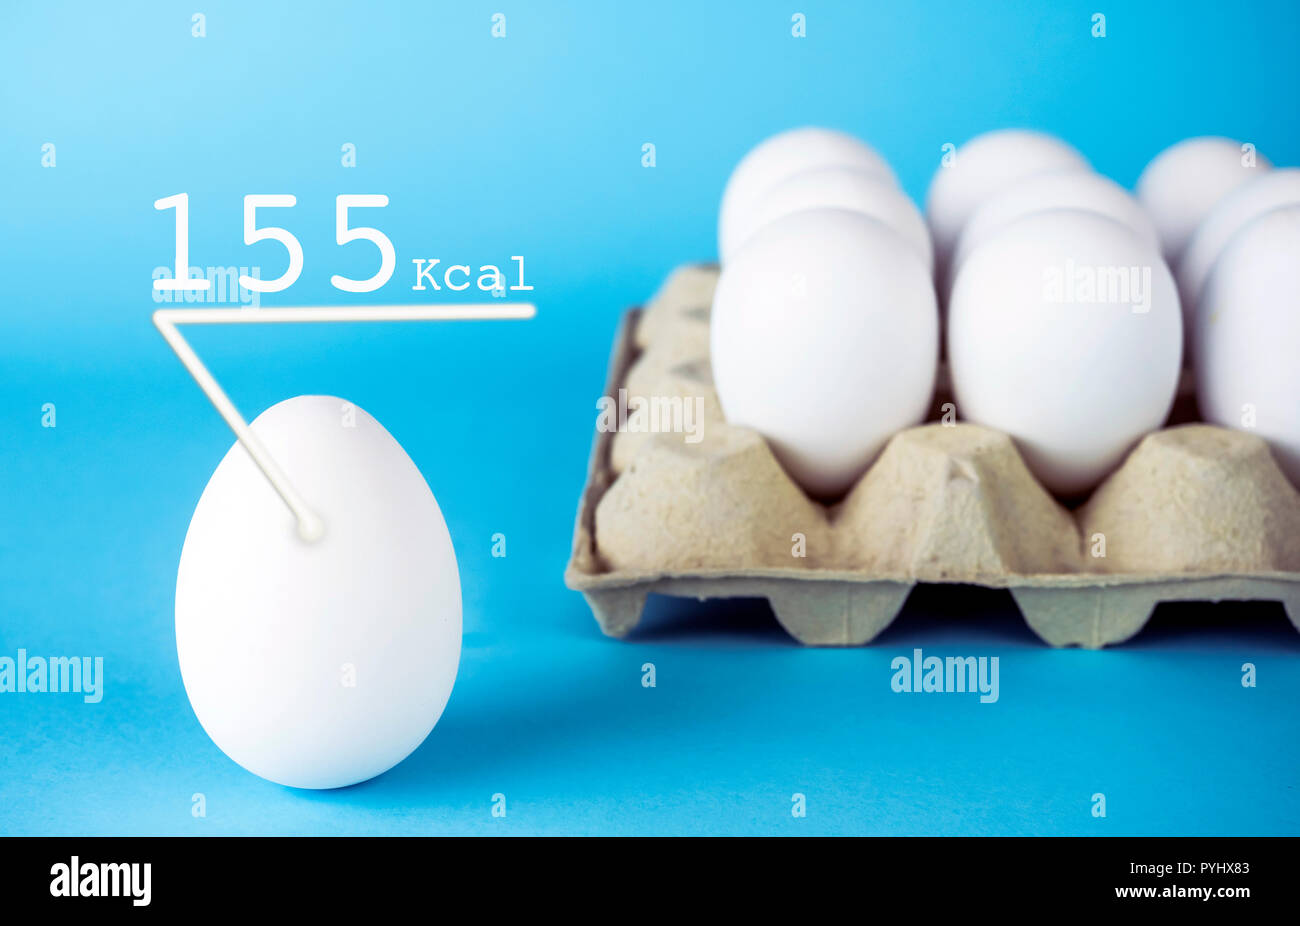 Los huevos de gallina blanca, 155 k calorías tiene un huevo, aislado sobre un fondo azul. Foto de stock